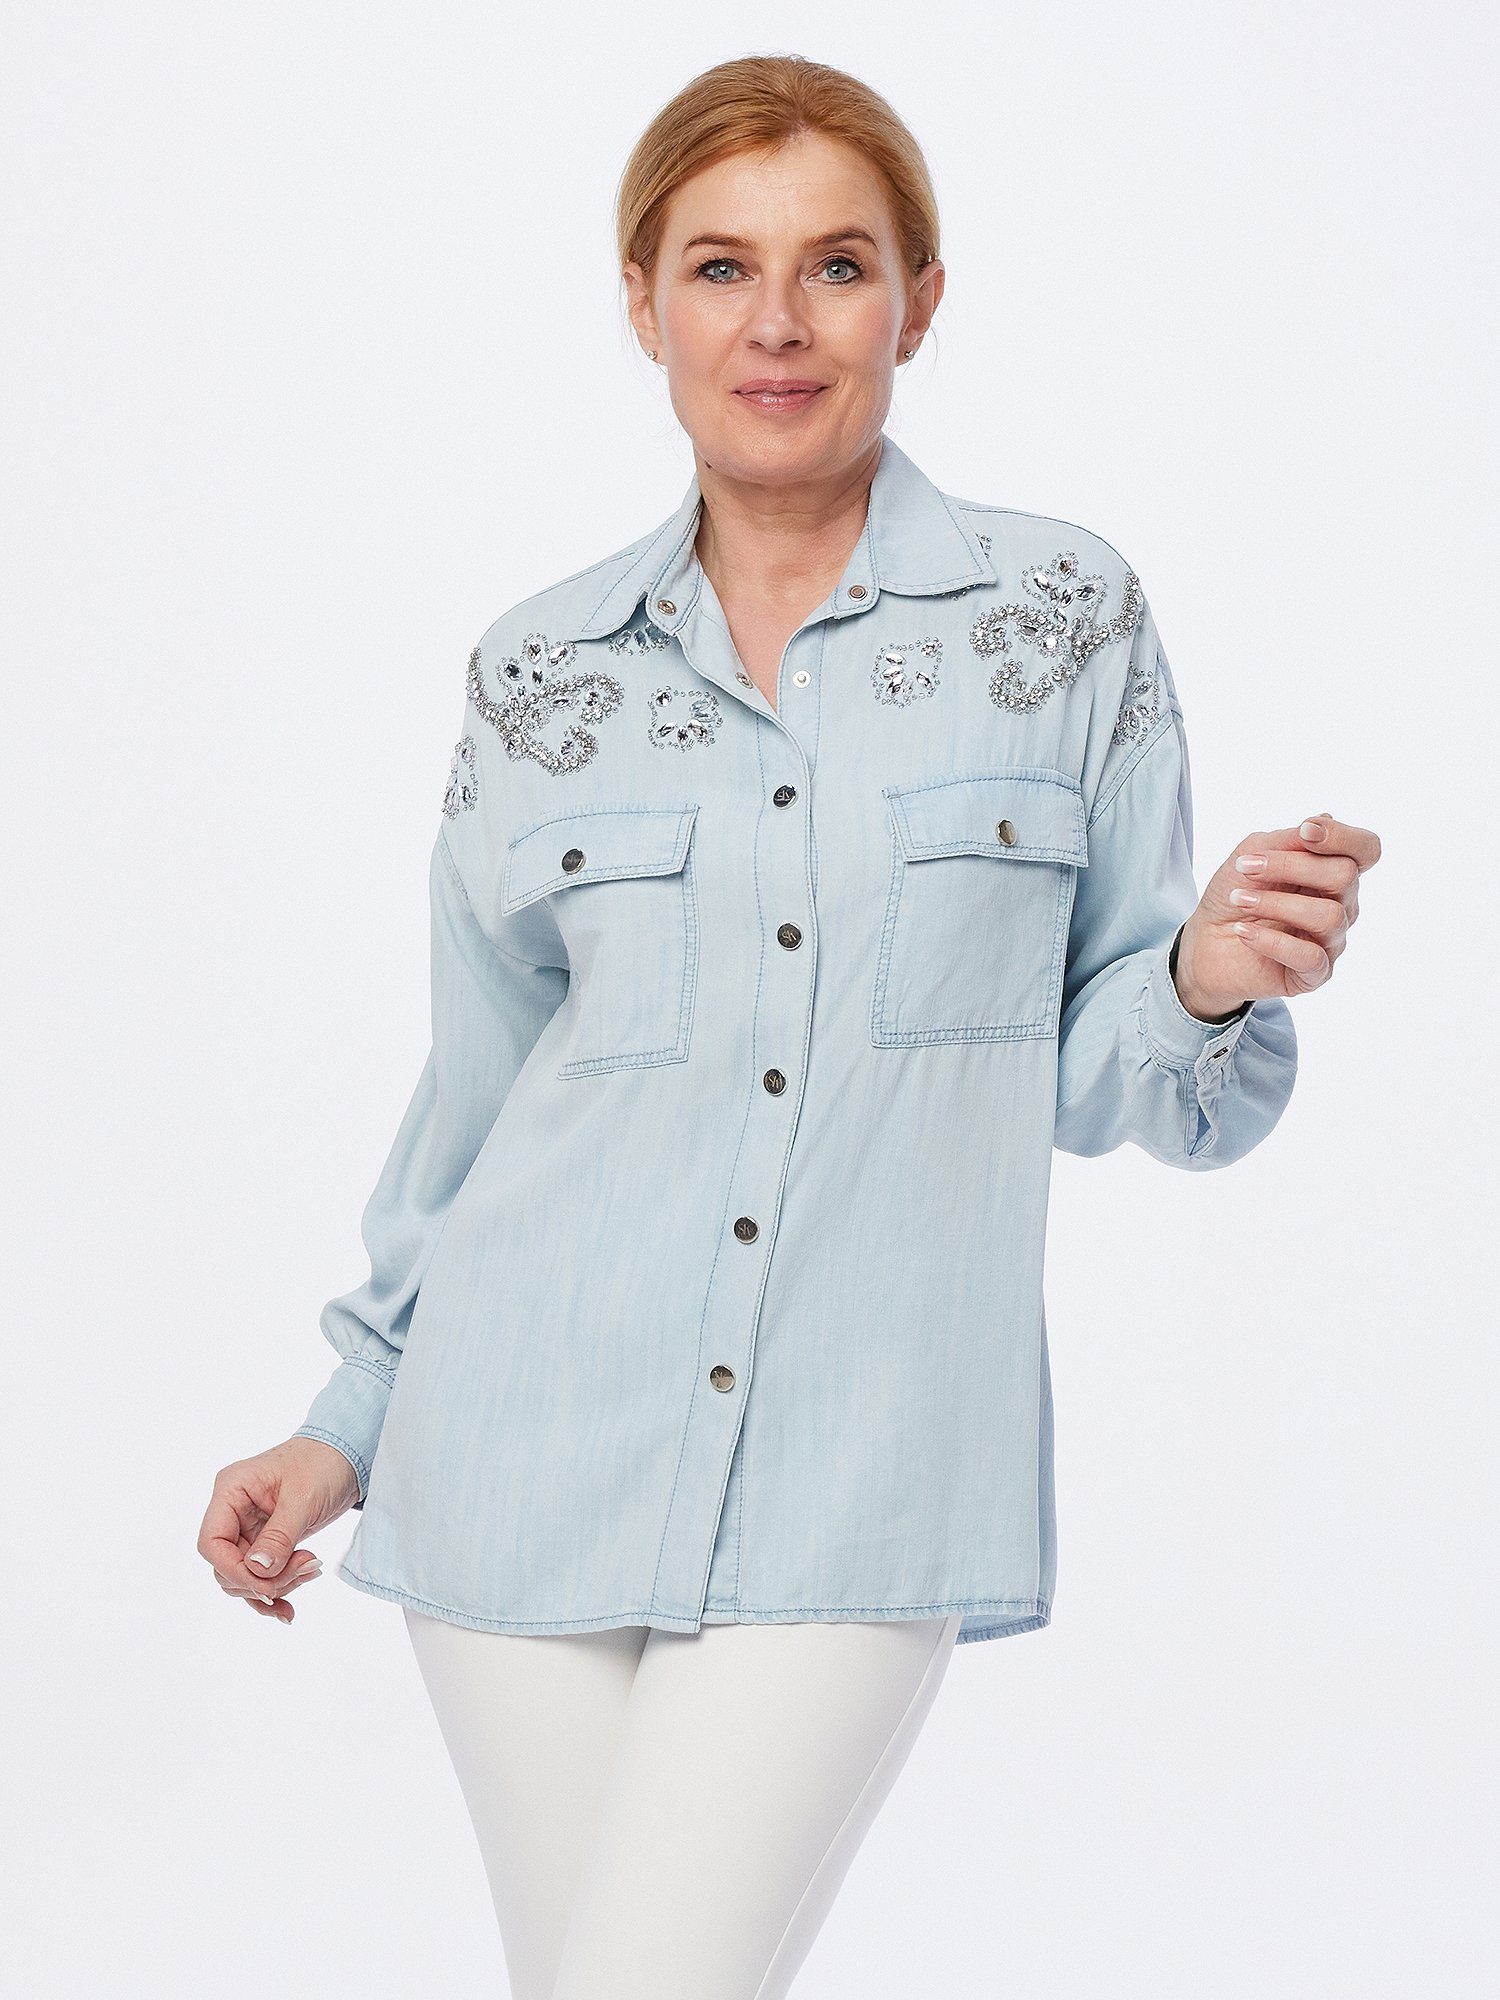 Sarah Kern Jeansbluse Hemd Oberteil-weit mit Zierstein-Veredlung